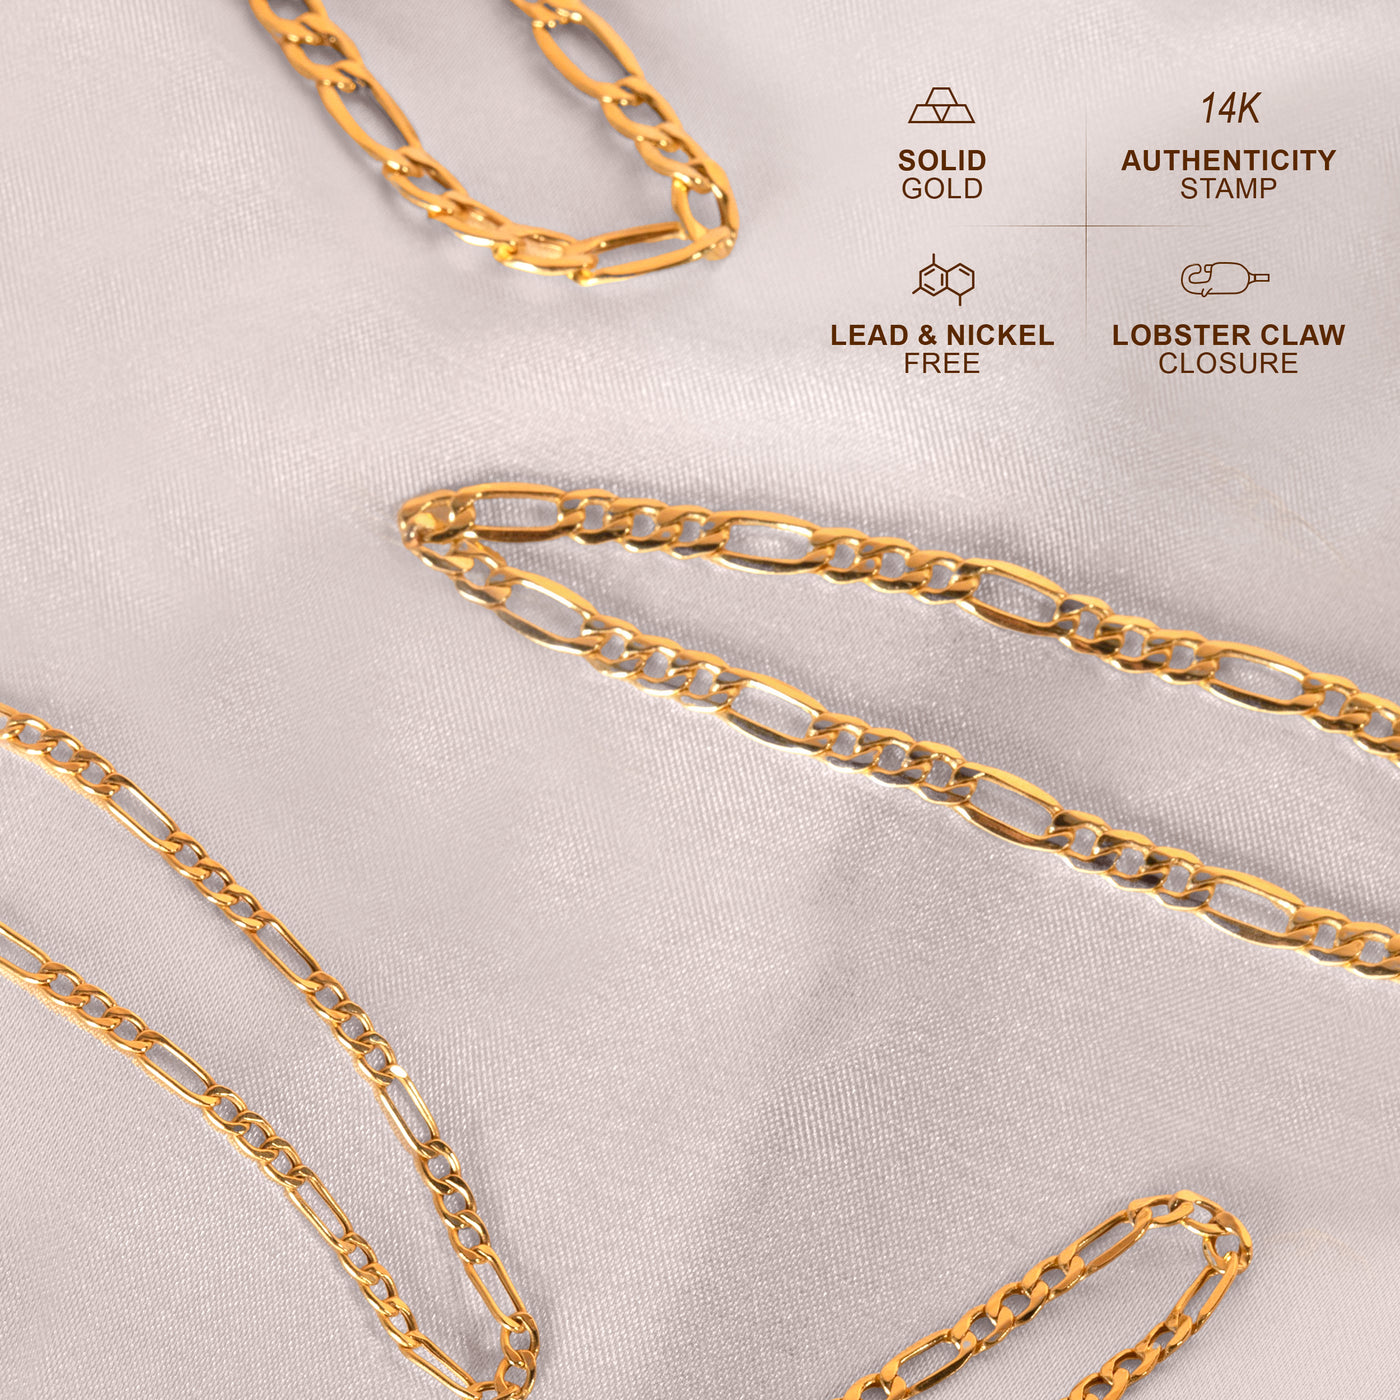 14K Gold Figaro Link Chain Bracelets for Men